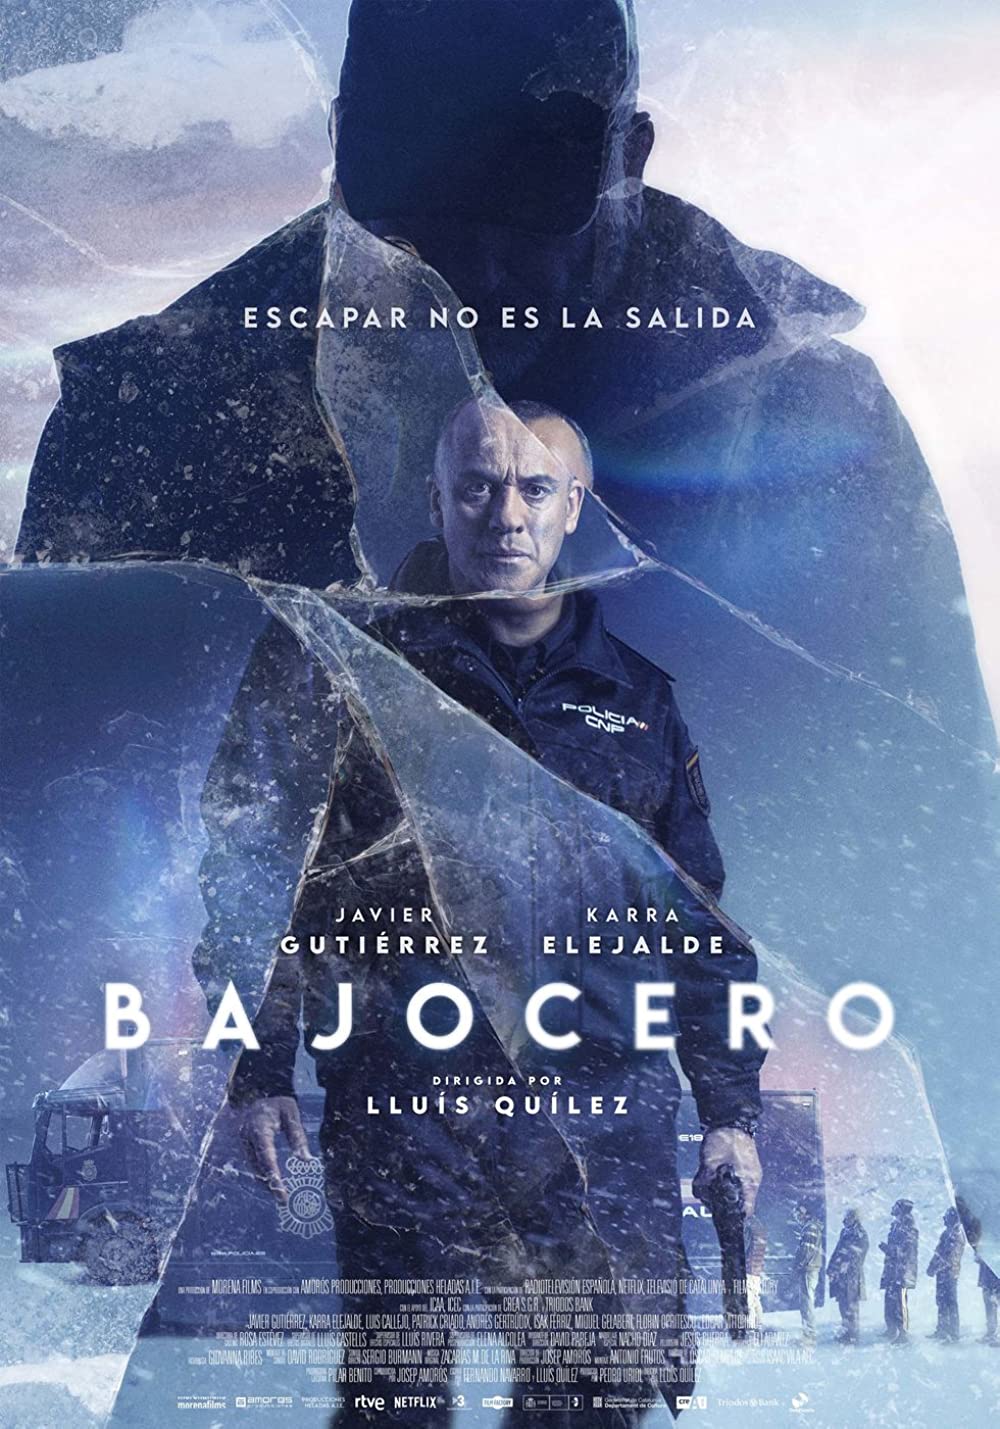 Filmbeschreibung zu Bajocero (Unter Null)